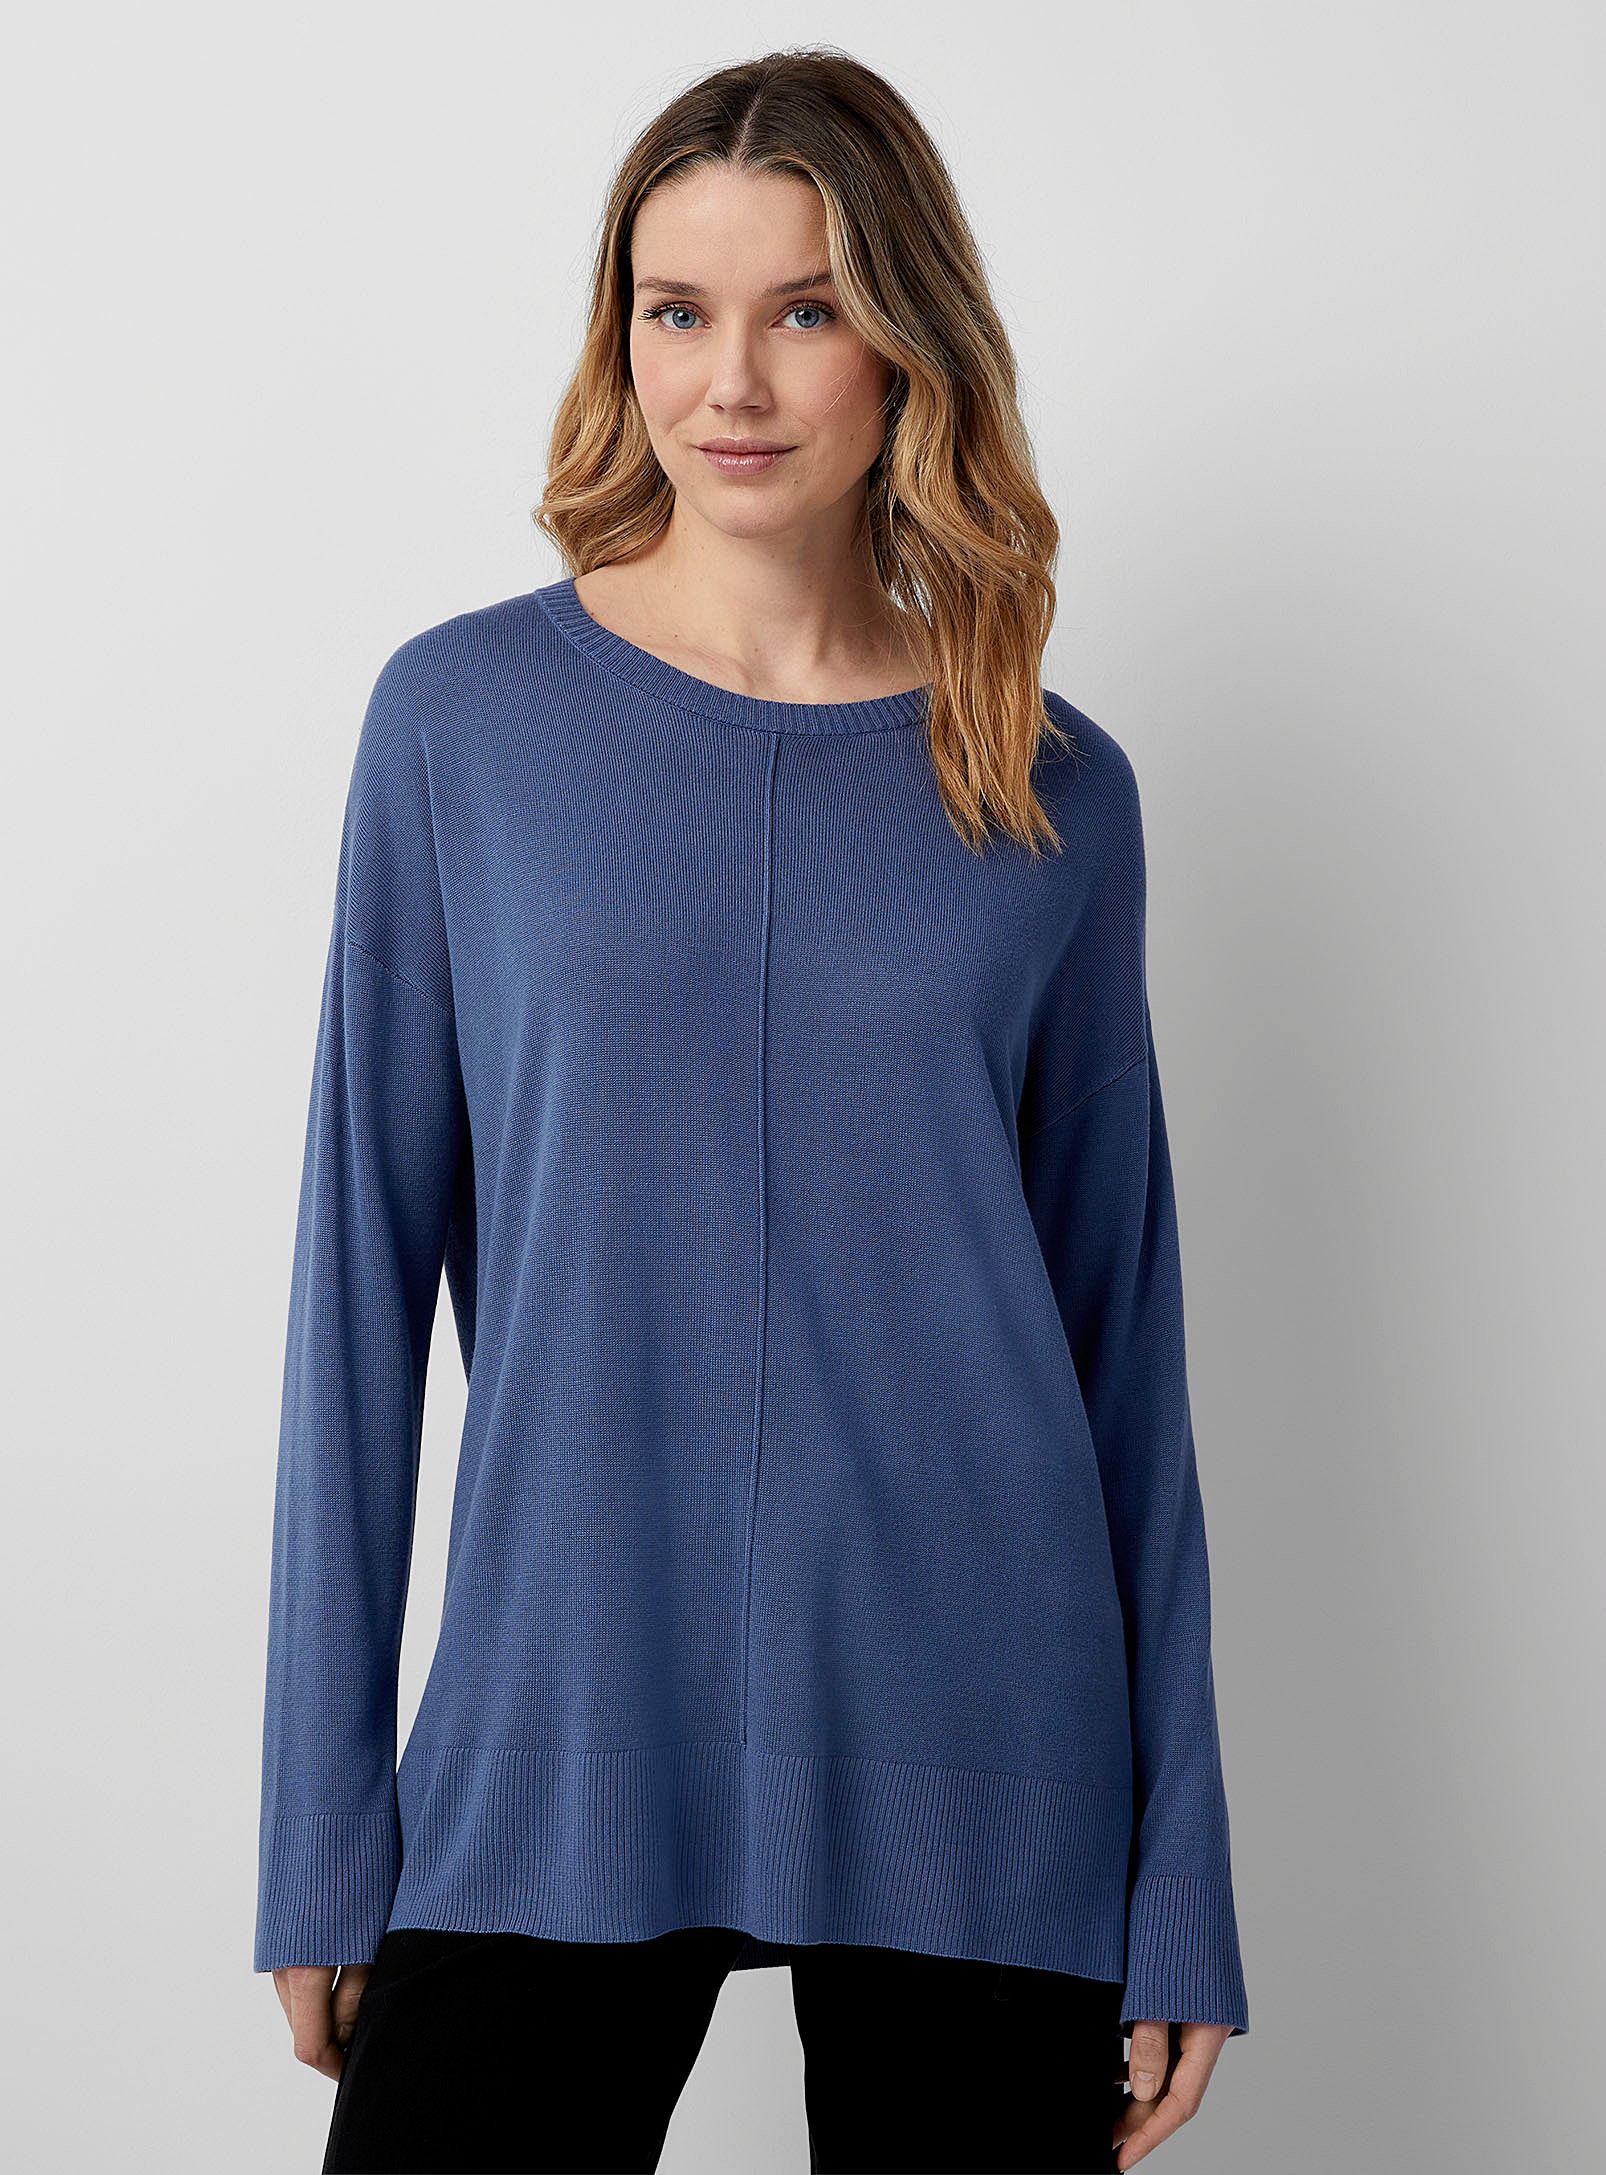 Contemporaine Embossed Seam Flowy Sweater In Dark Blue